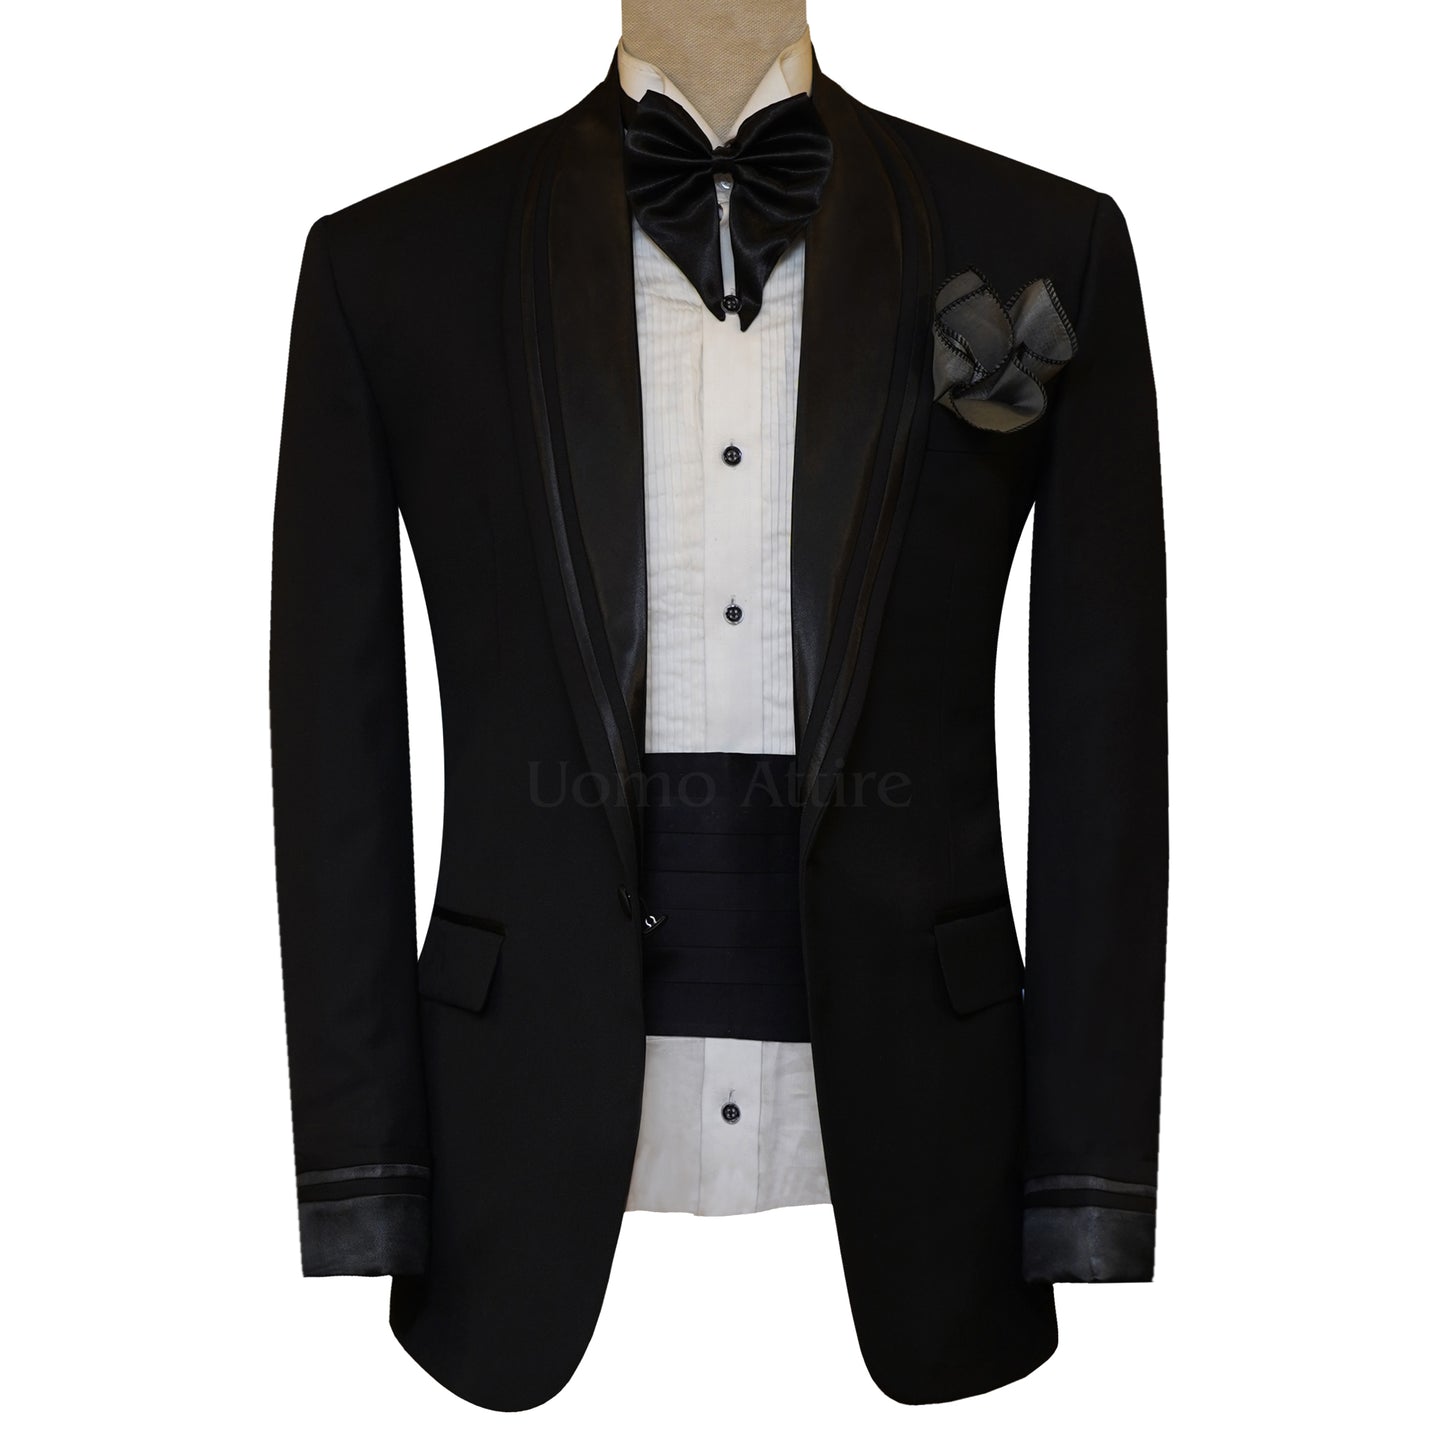 
                  
                    Men's Black Wedding Tuxedo Suit Style For Groom in USA
                  
                